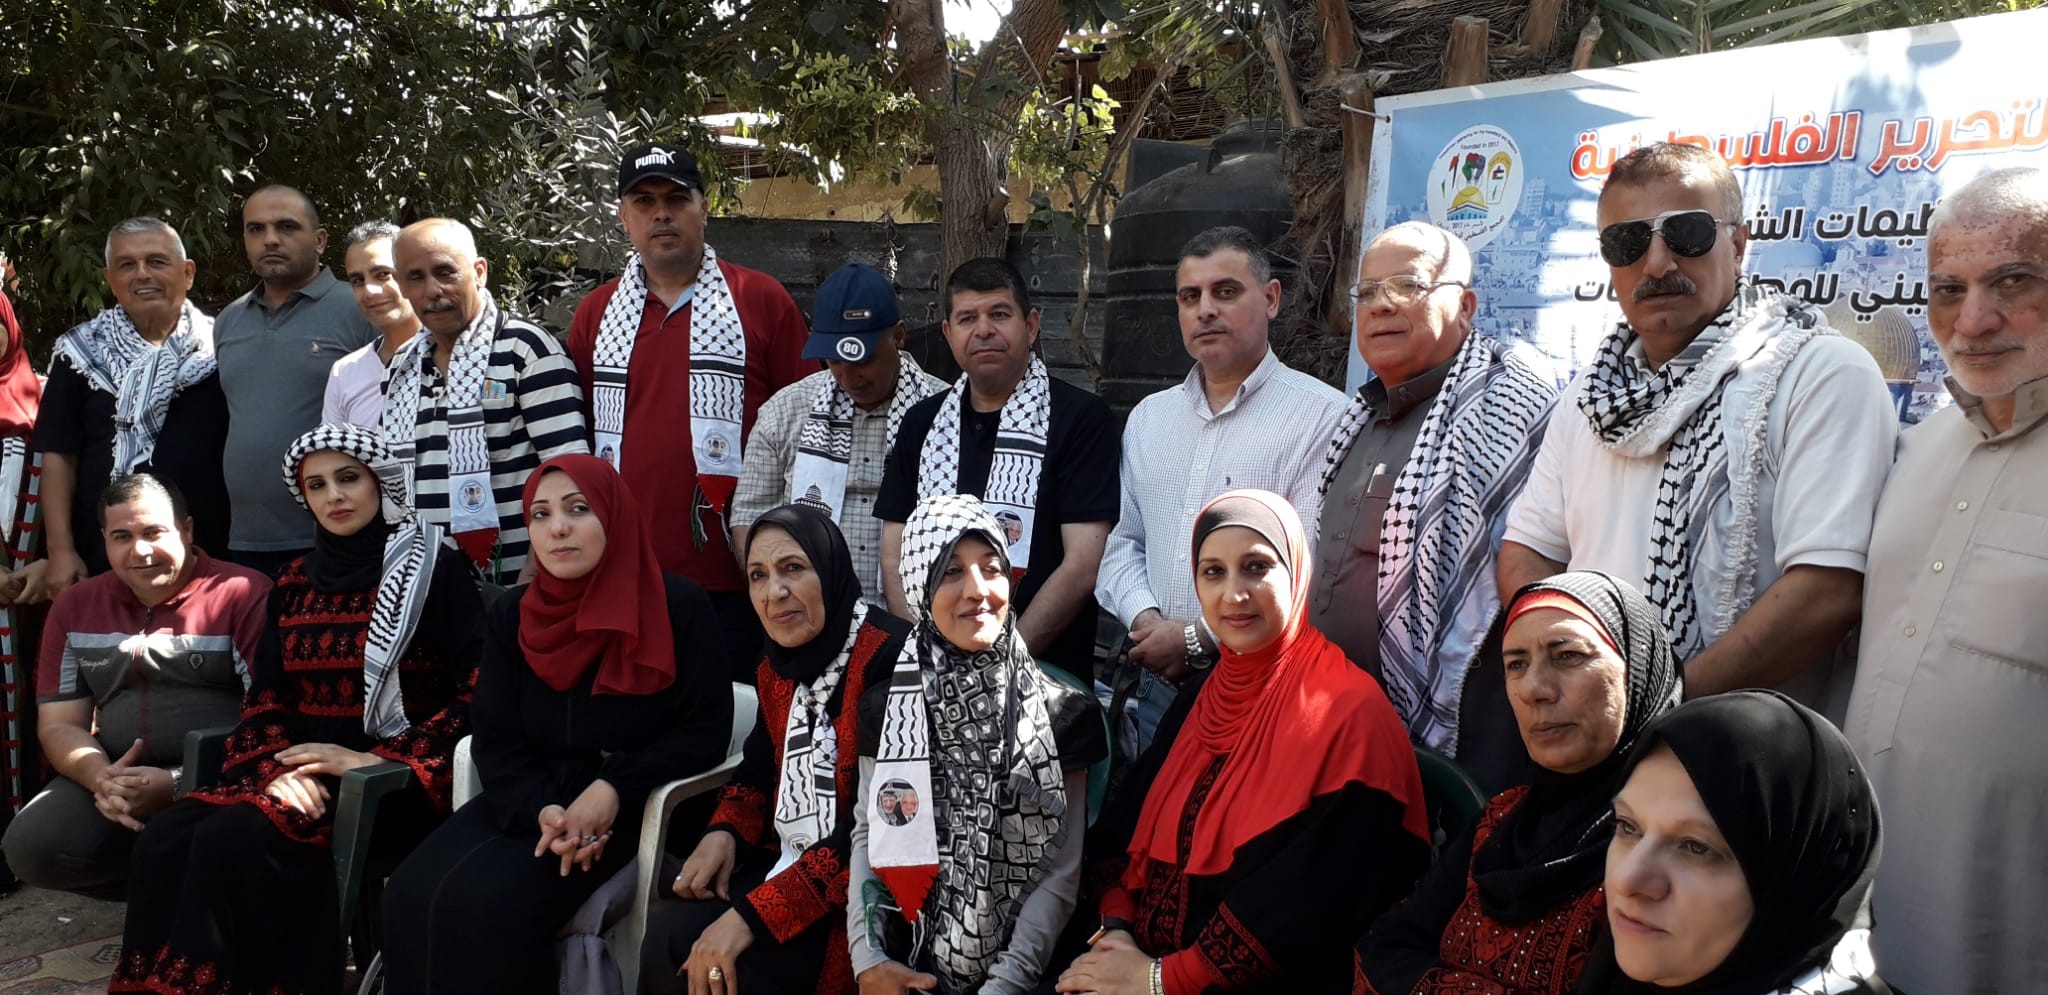 التجمع الفلسطيني للوطن و الشتات يساعد المزارعين بقطف الزيتون شمال غزة  56.jpg